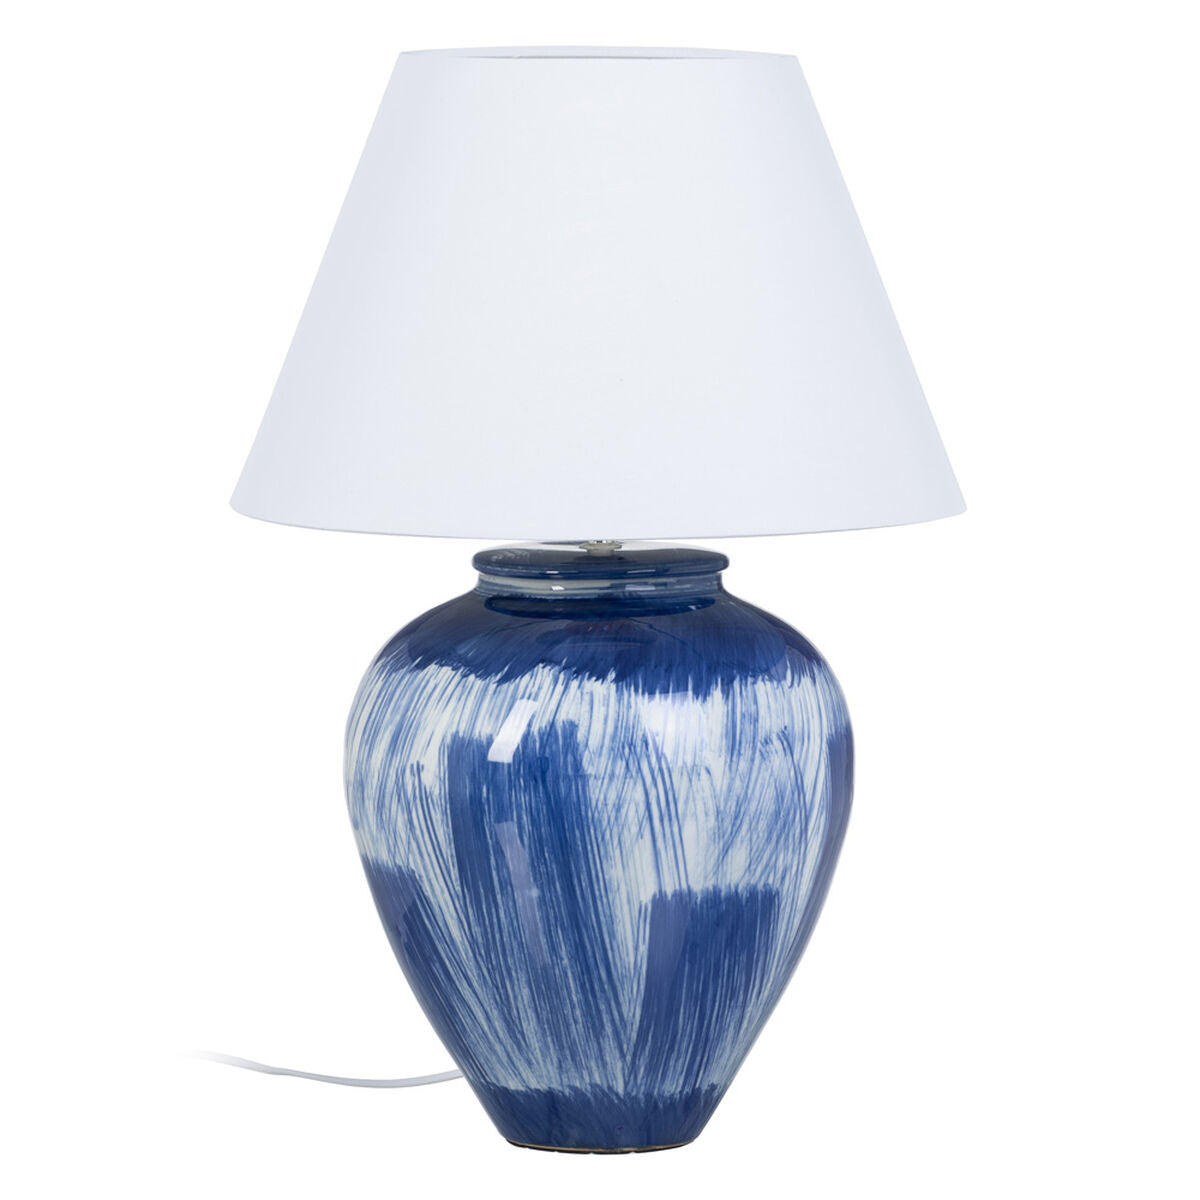 Desk lamp Blue Ceramic 40 W 220 V 240 V 220-240 V 41 x 41 x 76 cm